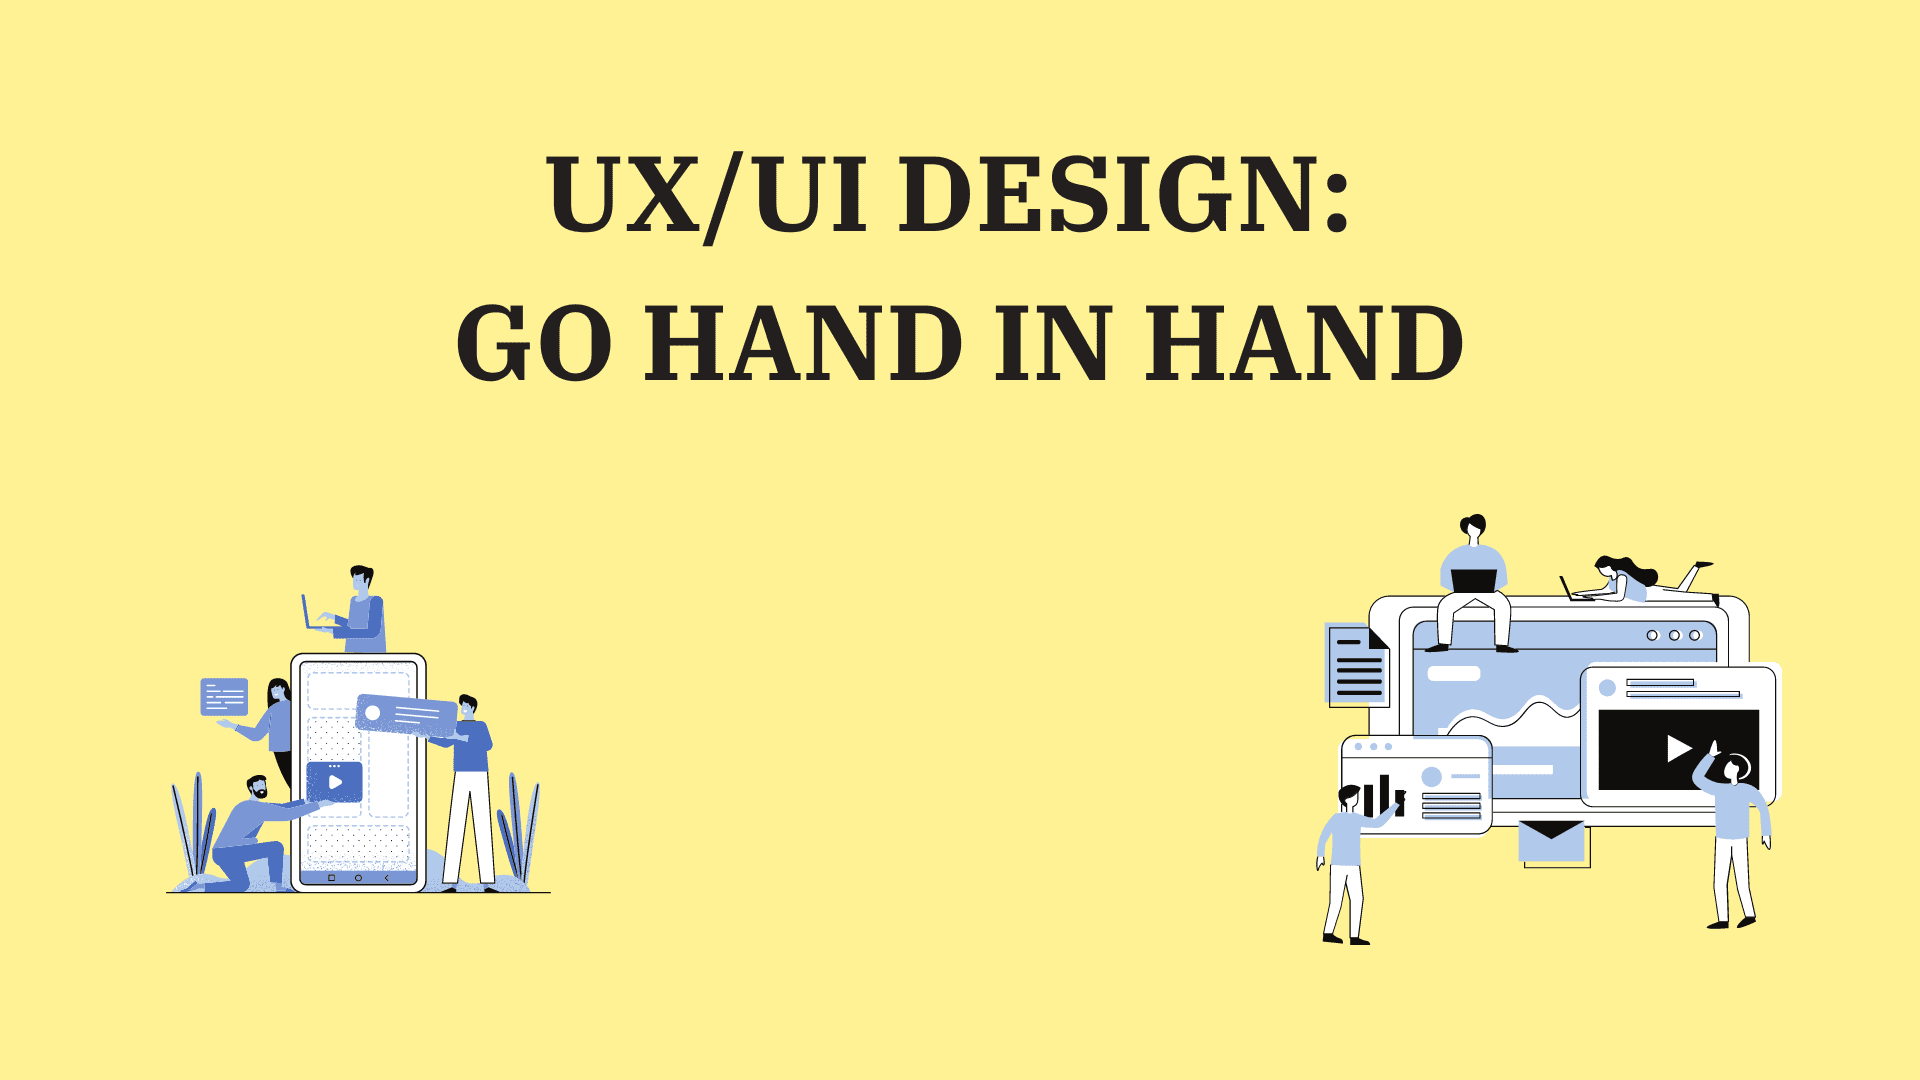 UX/UI Design: Go hand in hand